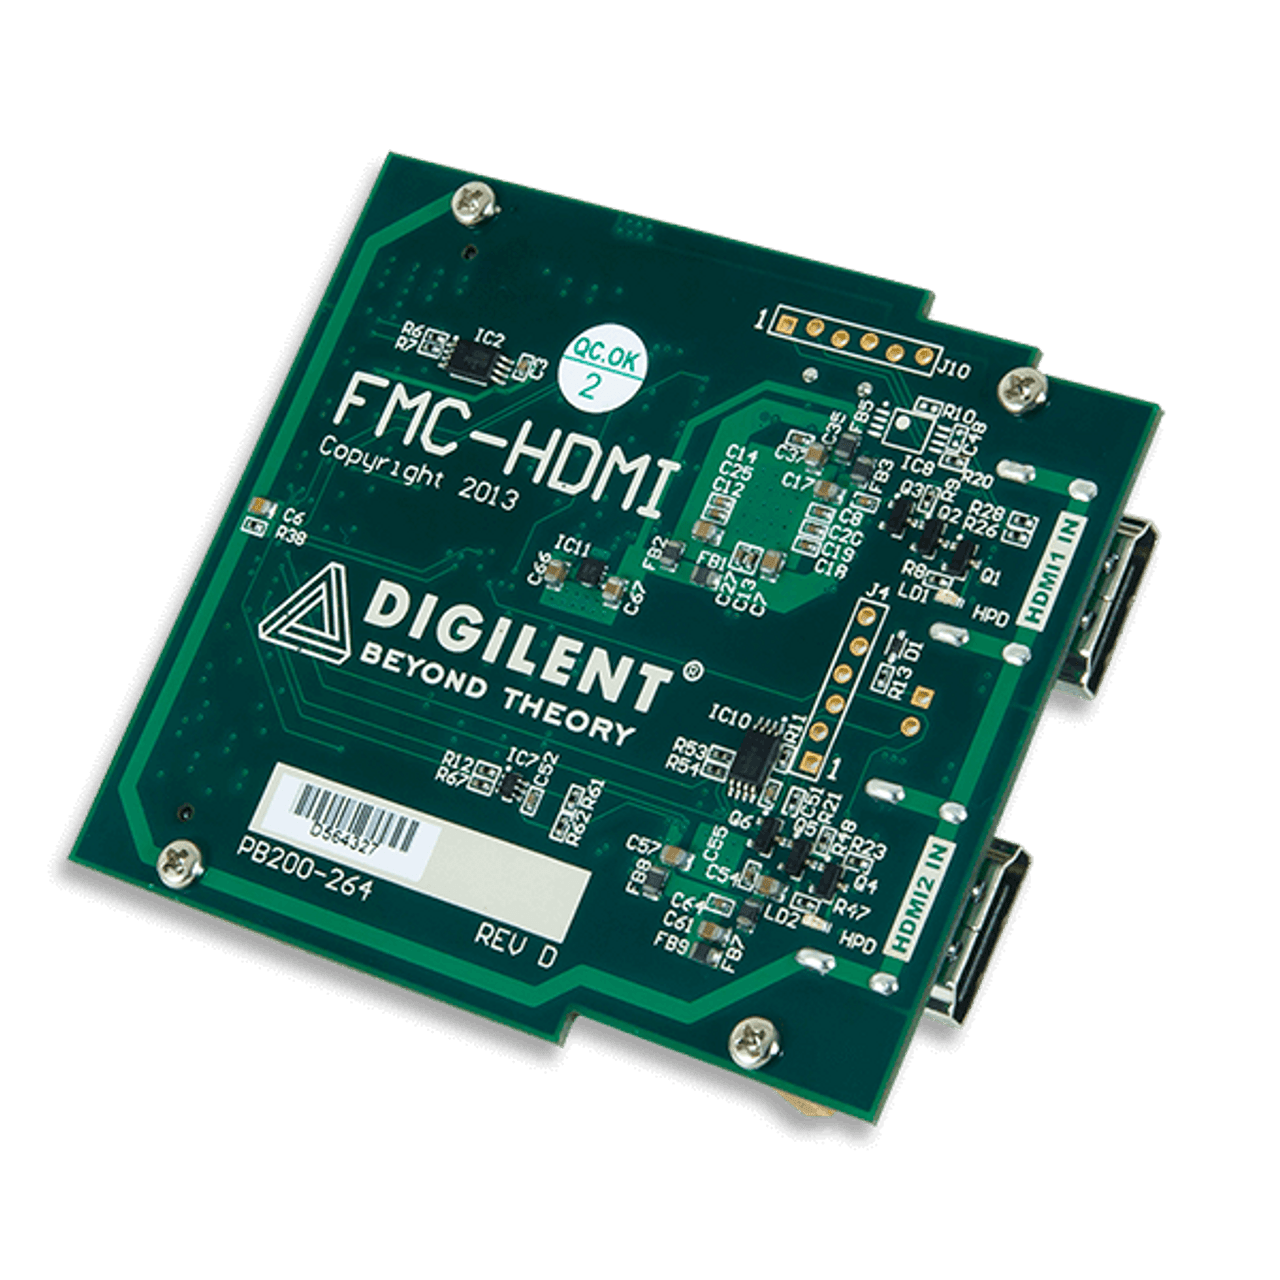 FMC-HDMI: HDMI Input Card - Digilent